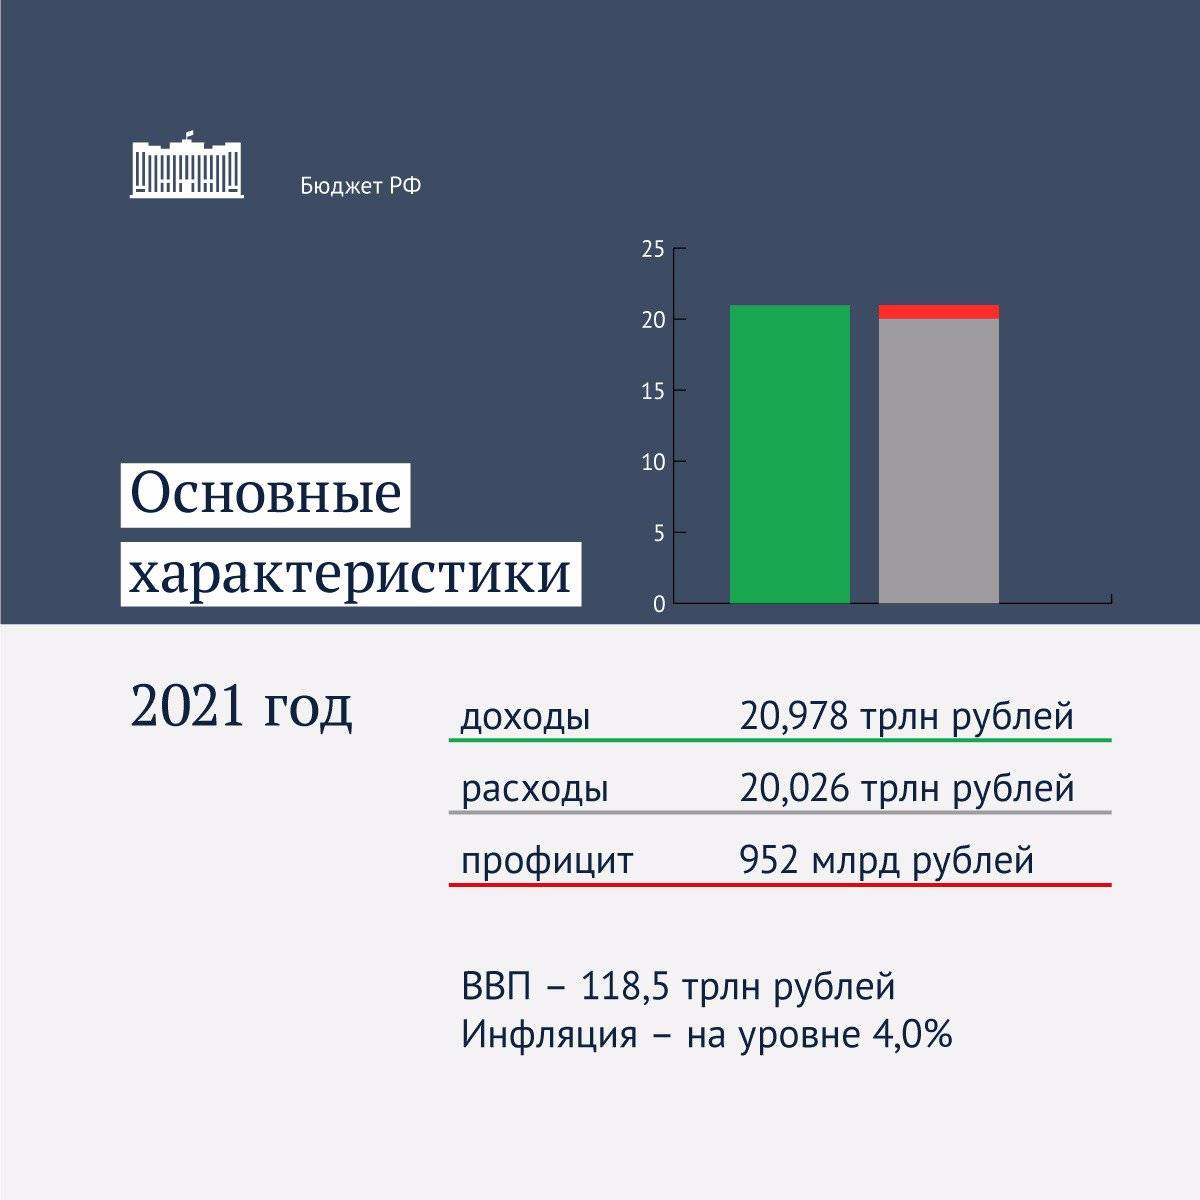 Минимальная и средняя зарплата в эстонии в 2021 году: работа для русских, украинцев